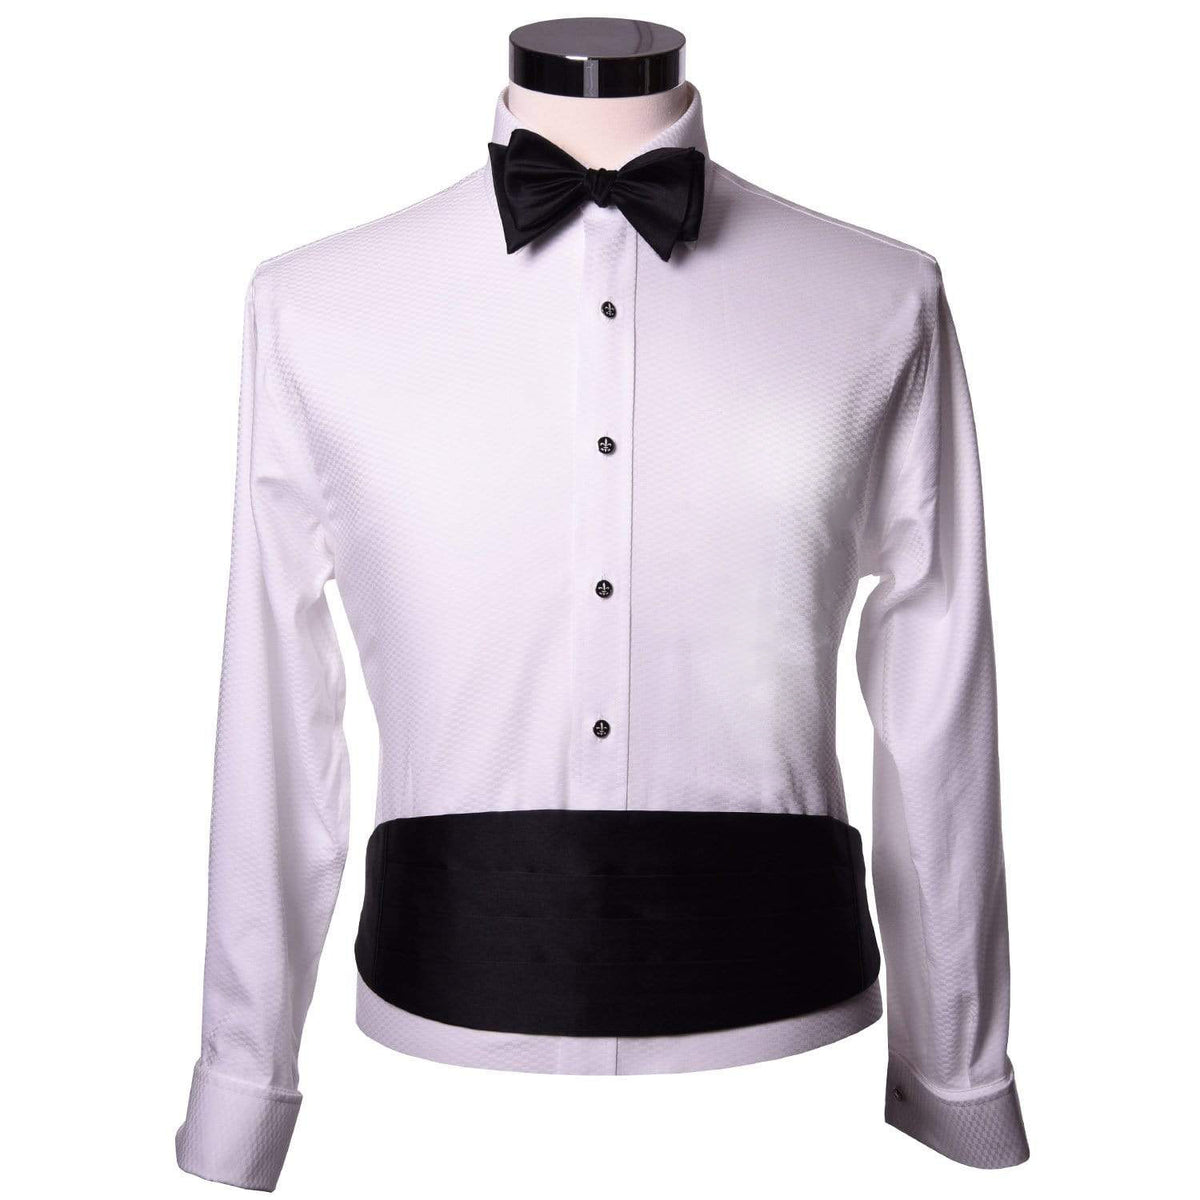 Prytania Tuxedo Shirt - without Pocket